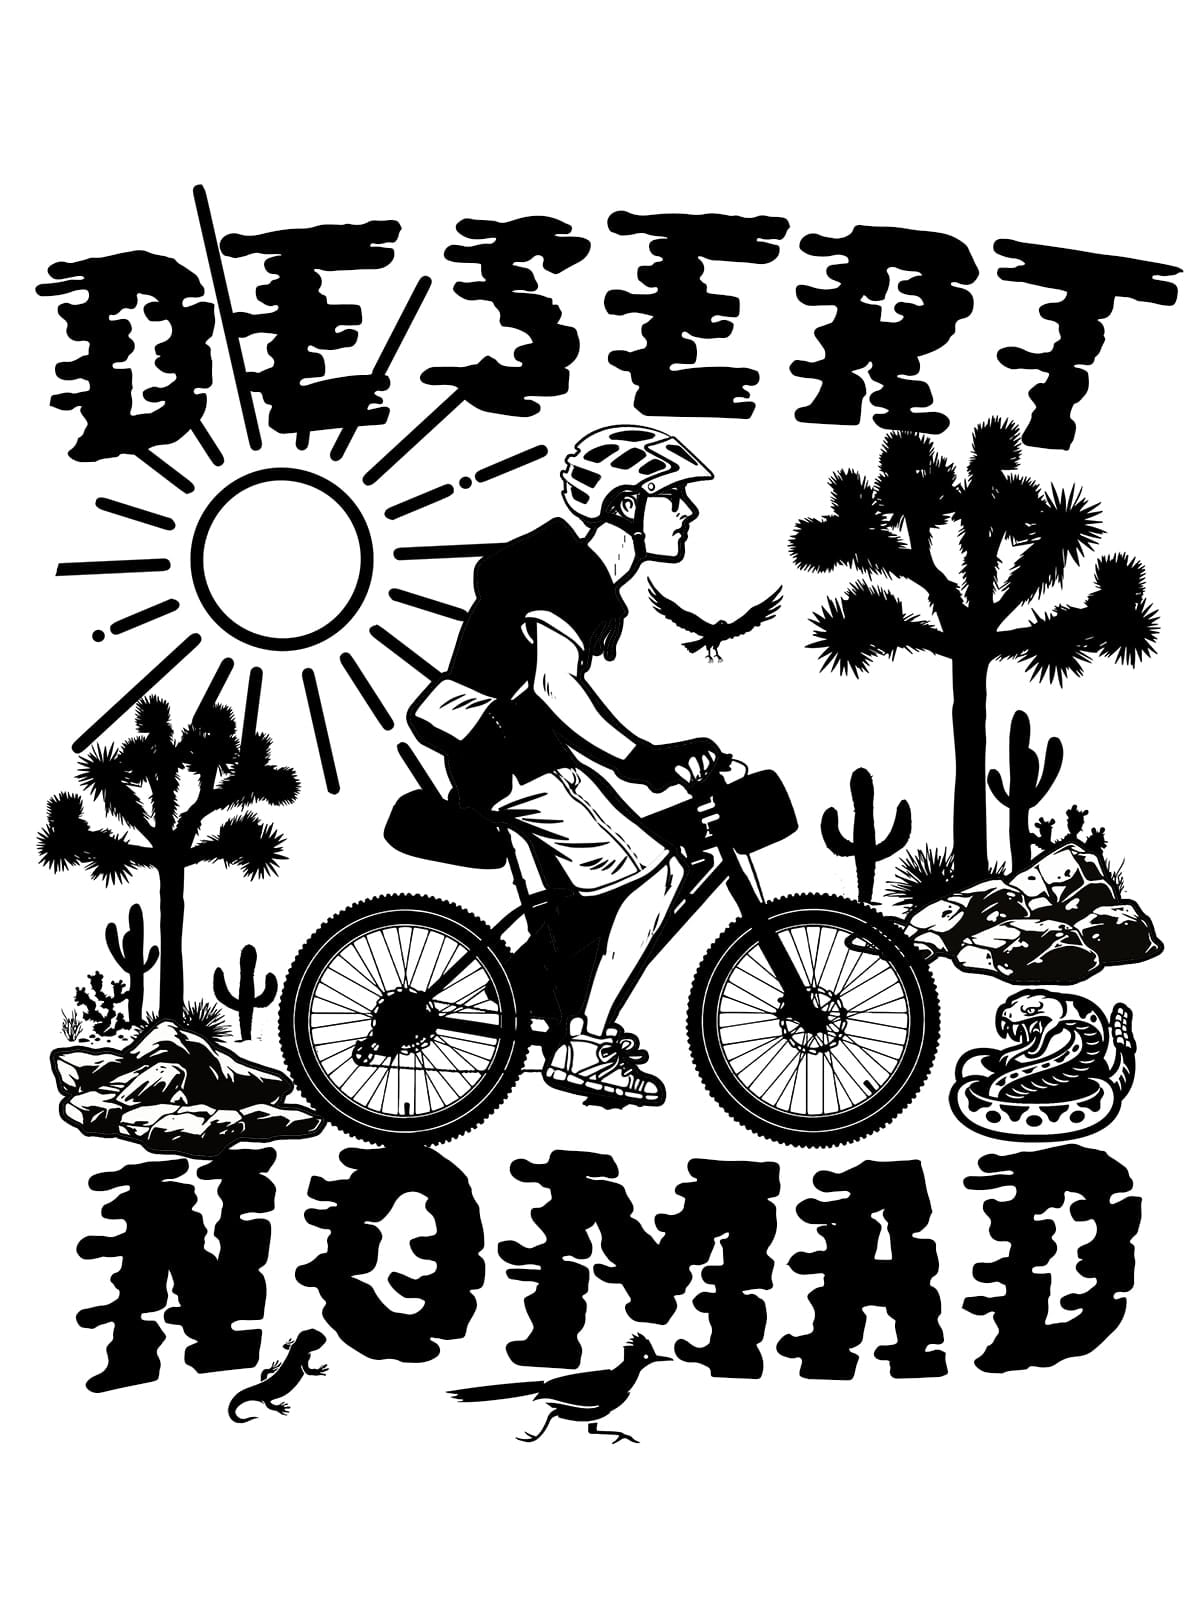 "Desert Nomad" Black & White 13 x 19 Poster Print